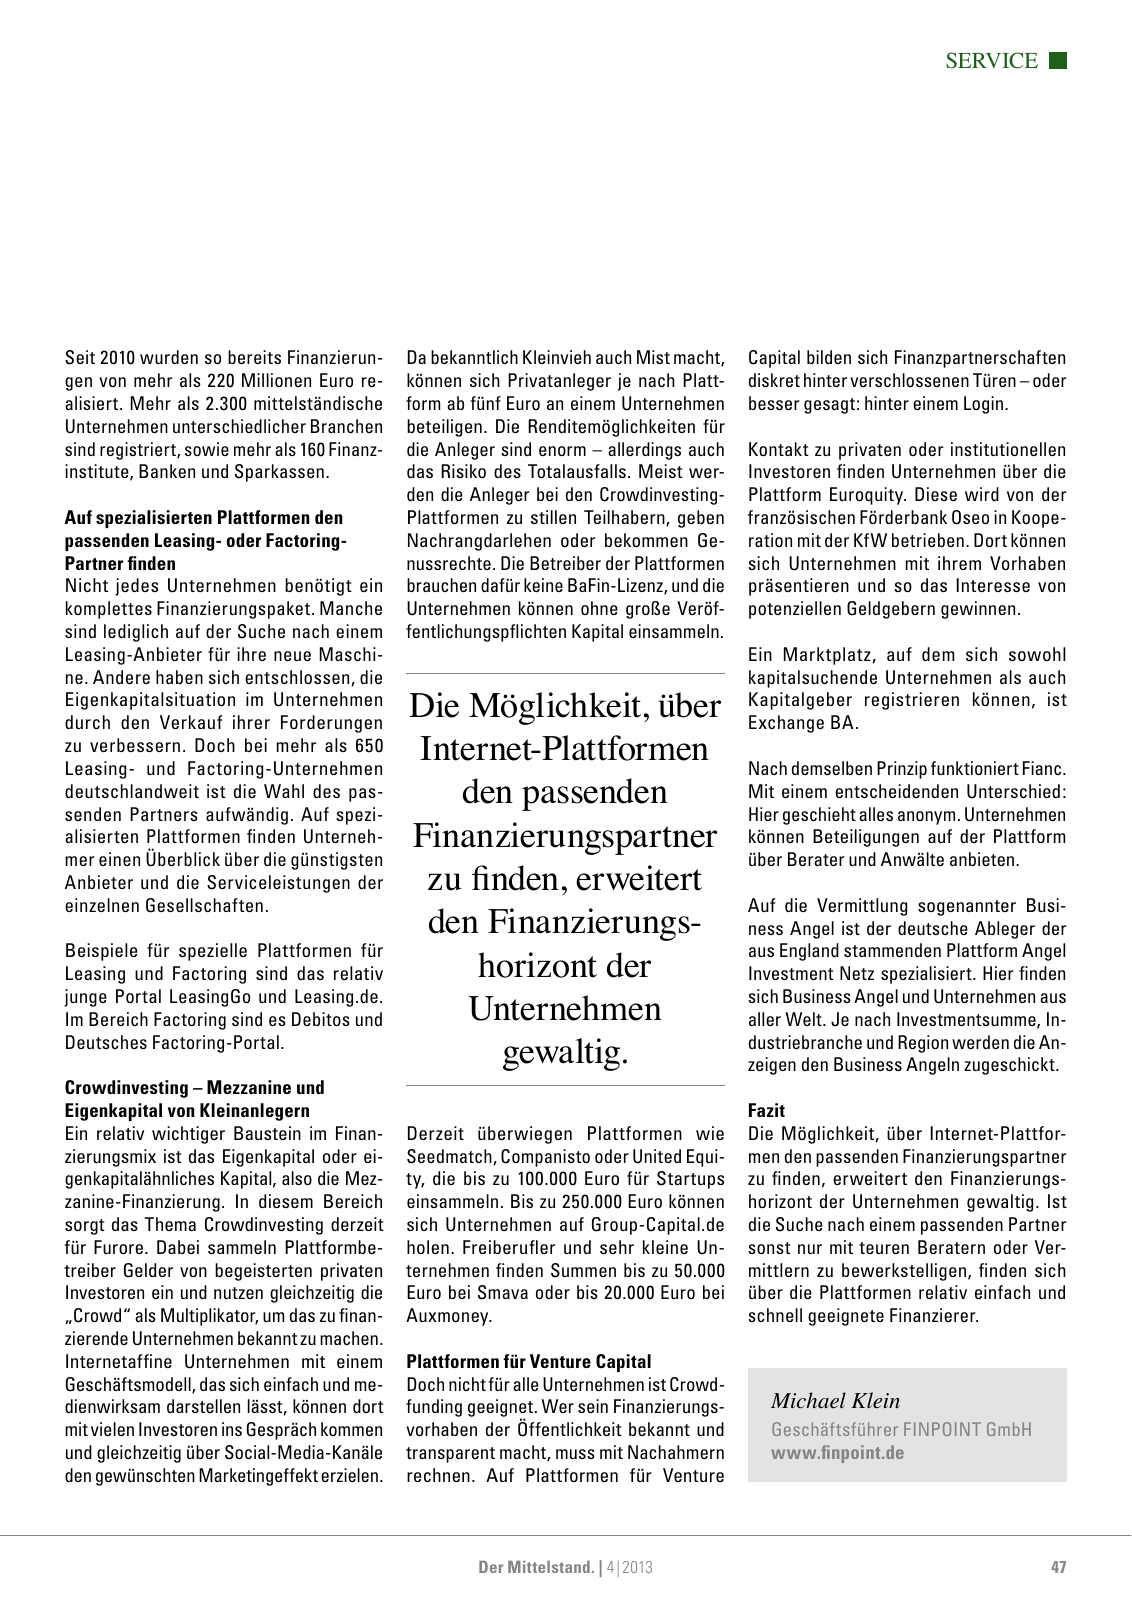 Vorschau Der Mittelstand. 4|2013 Seite 47